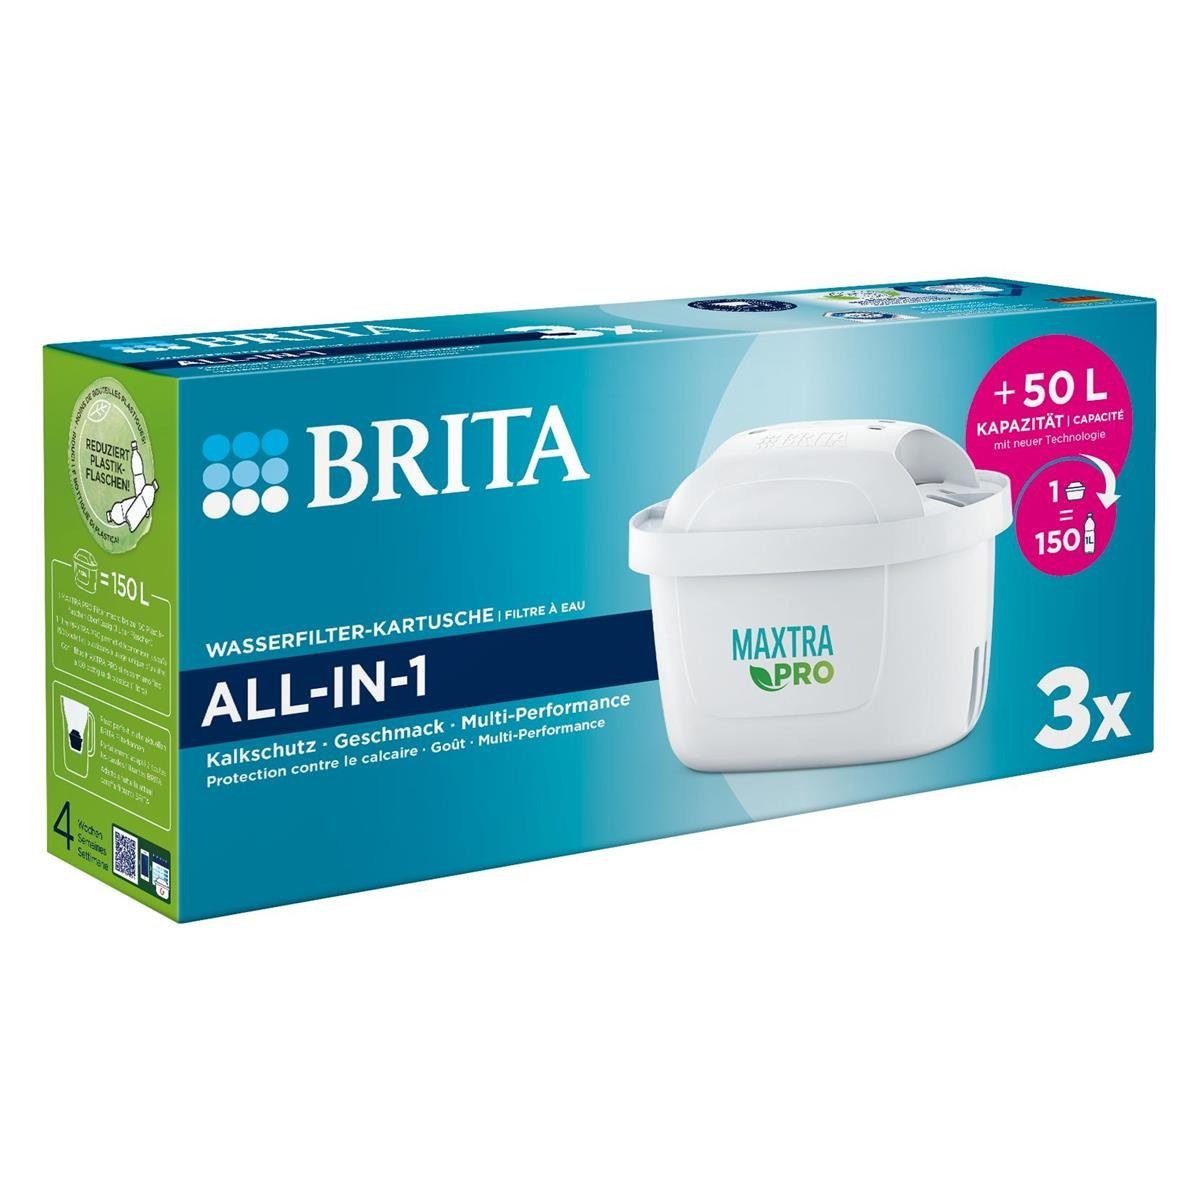 BRITA Wasserfilter Brita Wasserfilter-Kartusche 3er Maxtra Pro ALL-IN-1 -  Filterwasser (1